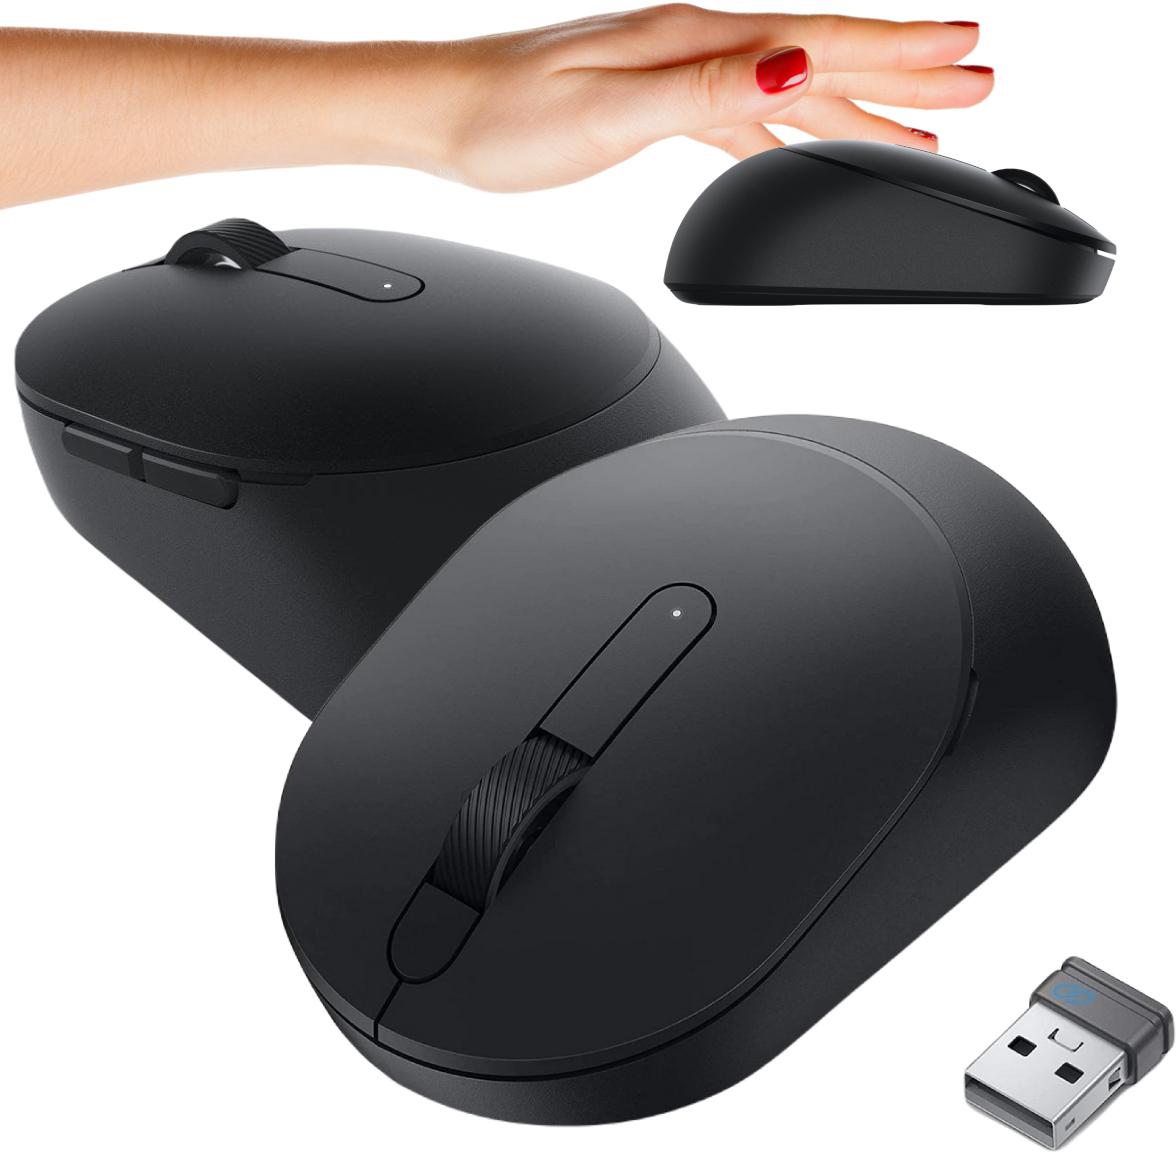 Bezprzewodowa mysz optyczna Dell MS3320W Mobile Wireless Mouse - najważniejsze cechy: